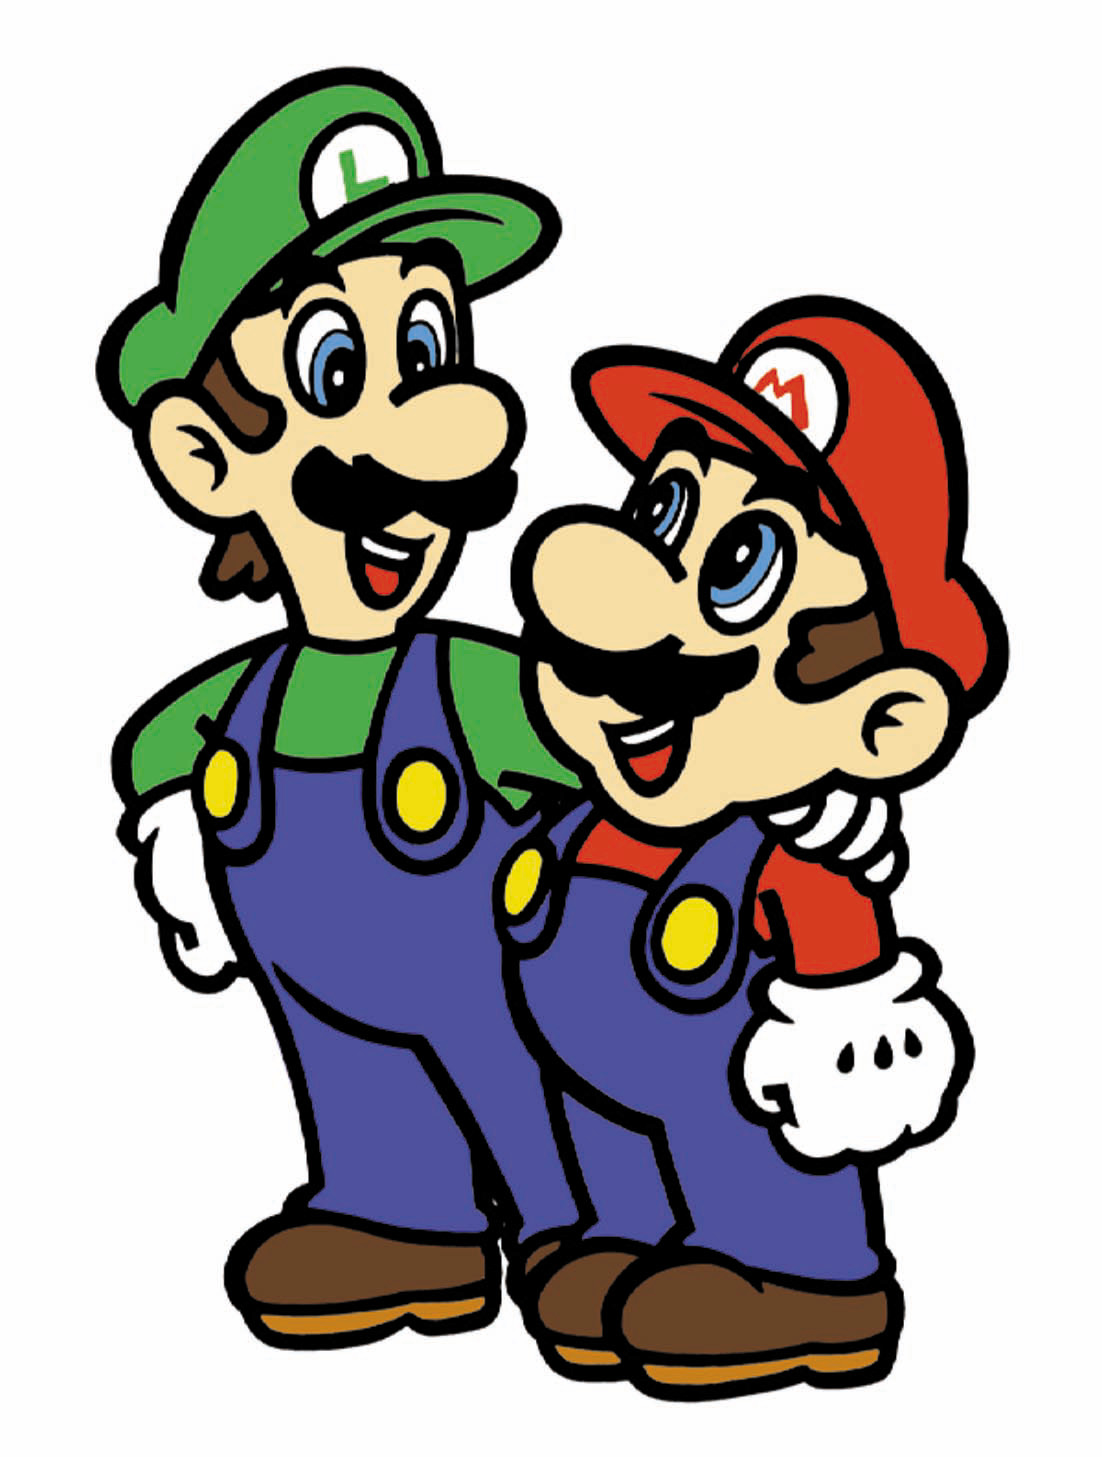 Mario Bros. (2001)